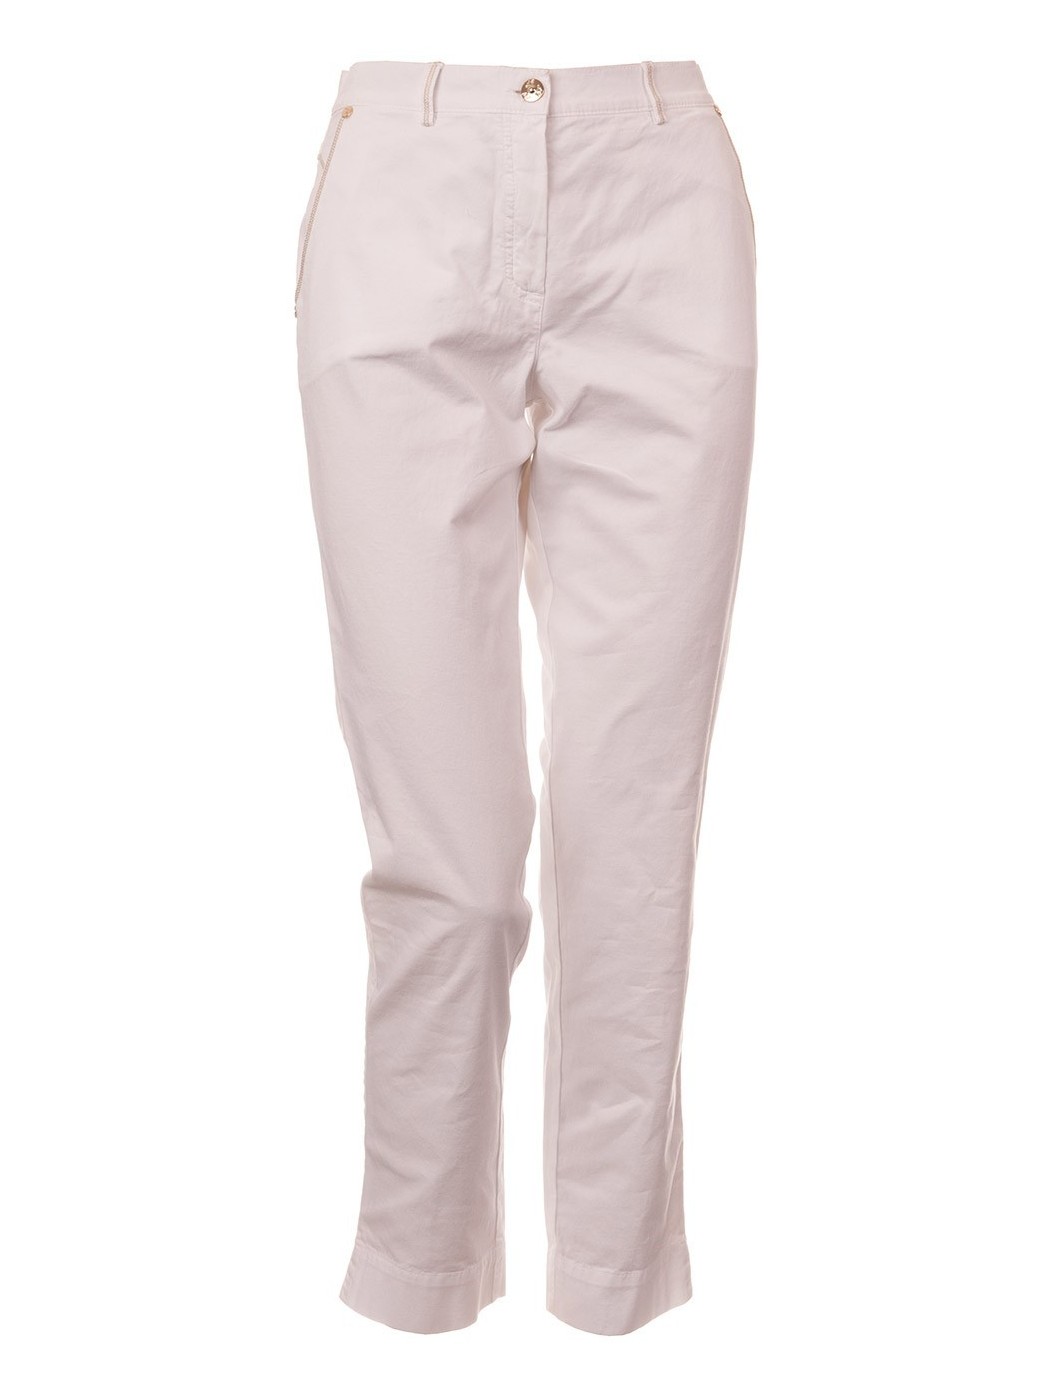 Pantalon Capri blanc Pucci